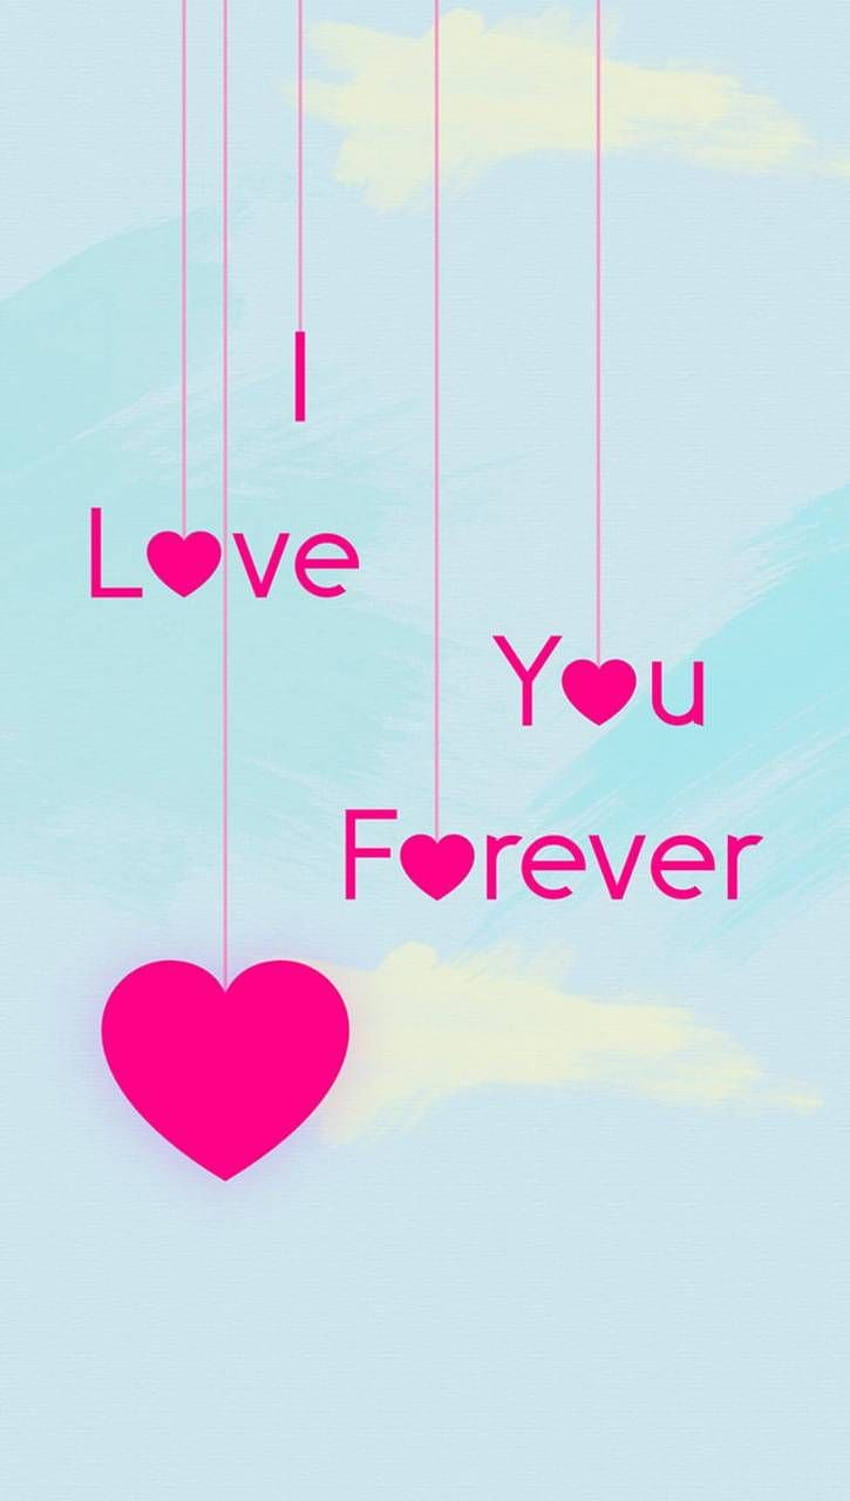 Love You Forver oleh xhani_rm, istri dan suami wallpaper ponsel HD